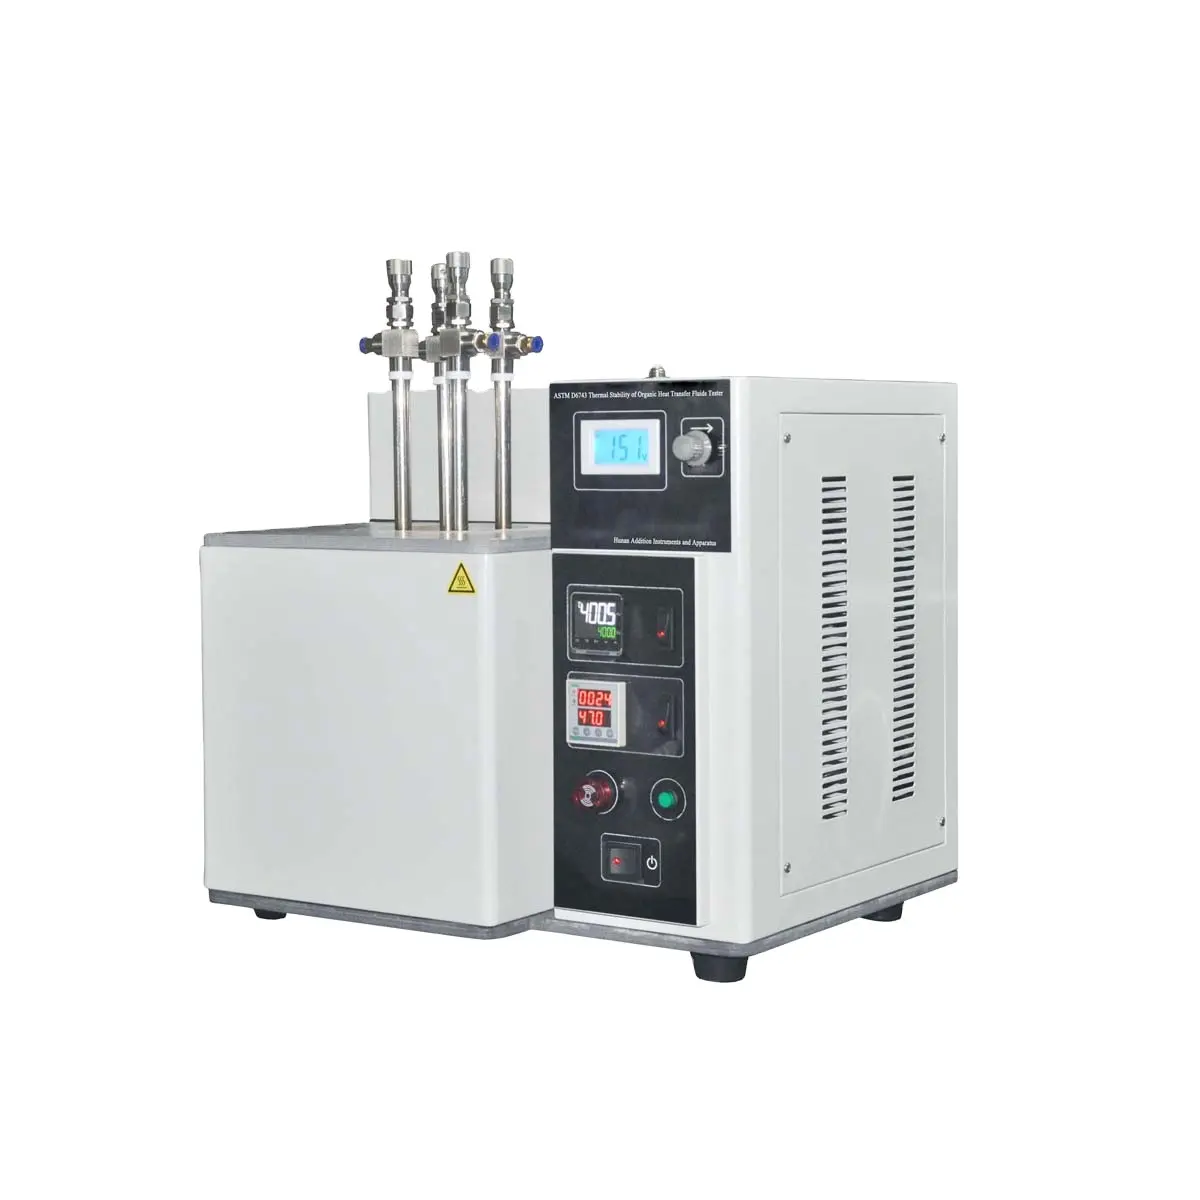 Astm D6743 Thermische Stabiliteit Van Organische Warmteoverdrachtsvloeistoffen Tester Digitale Display Temperatuurregeling Analysator